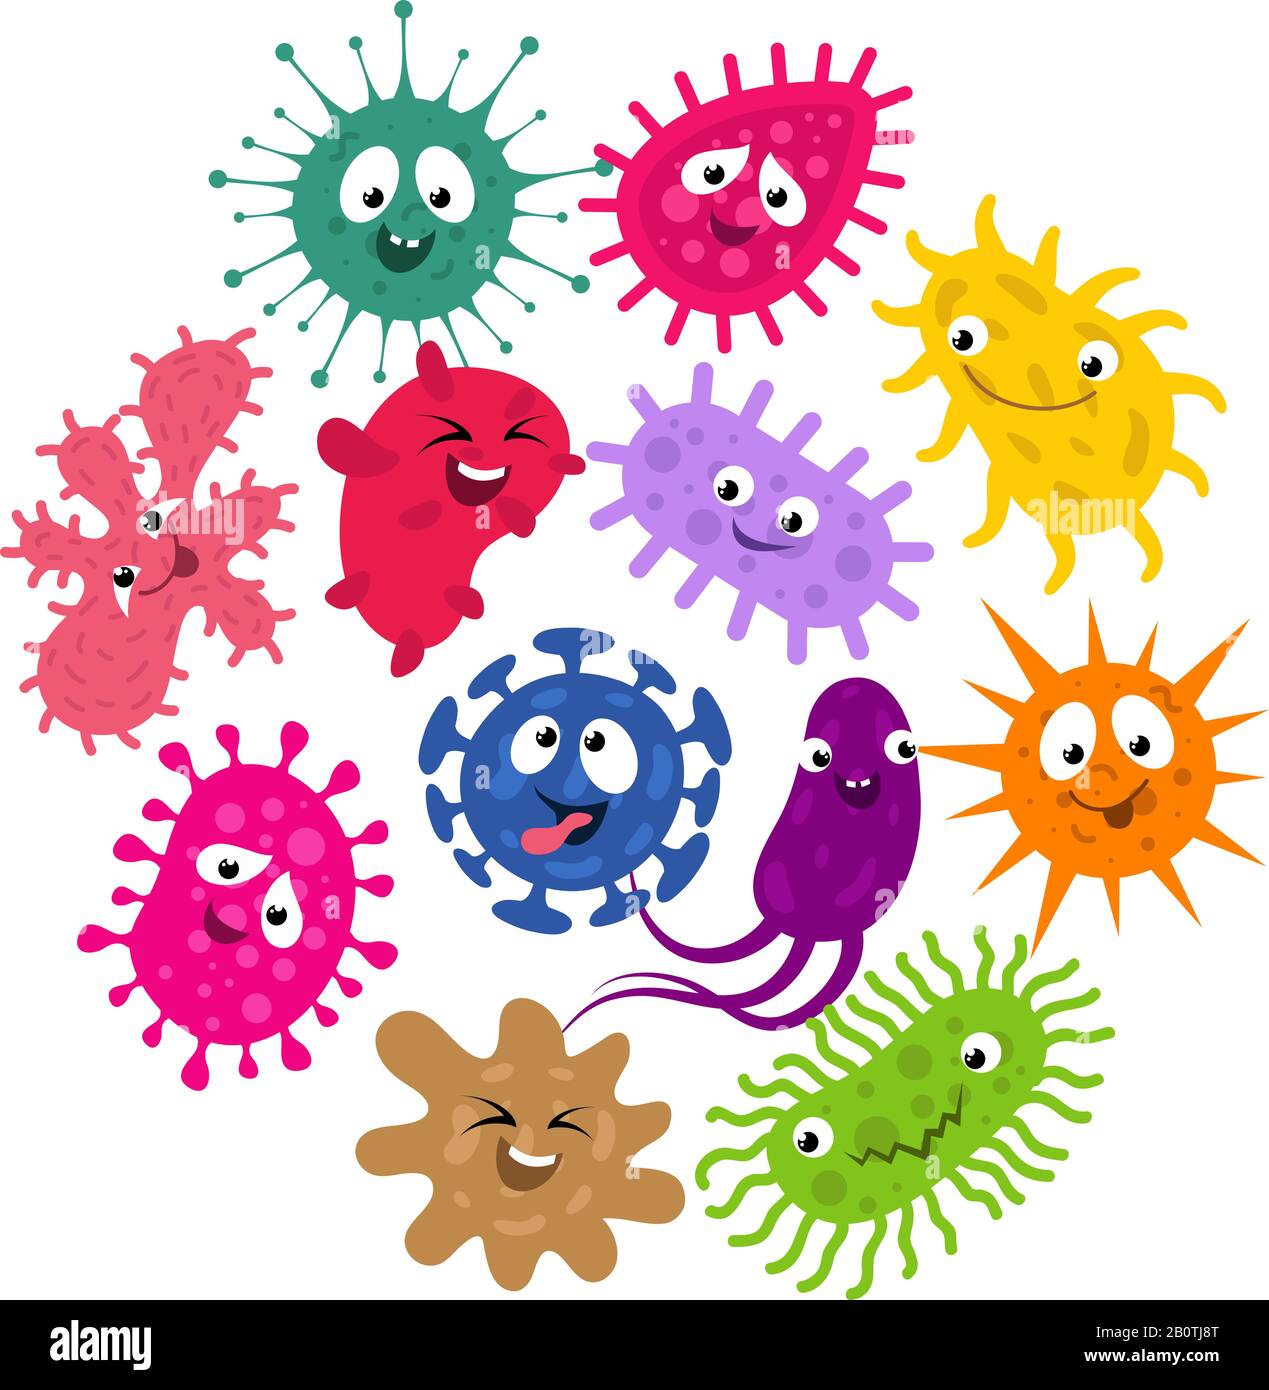 Gérmenes divertidos y virus niños vector fondo. Ilustración de los caracteres que agrupan las bacterias y la infección por microorganismos Ilustración del Vector